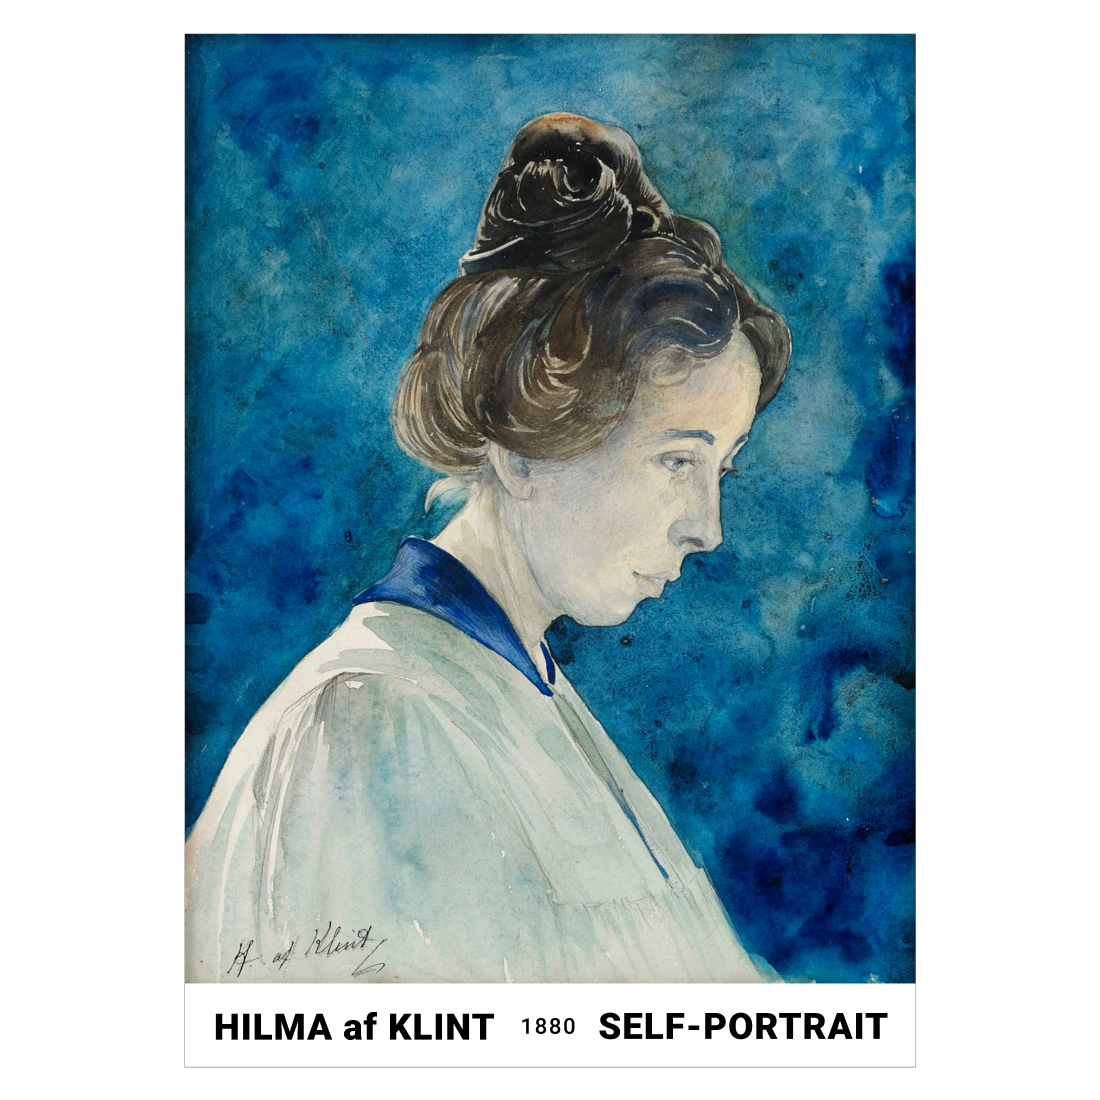 Kunstplakat med Hilma af Klint "Self-Portrait" fra 1880